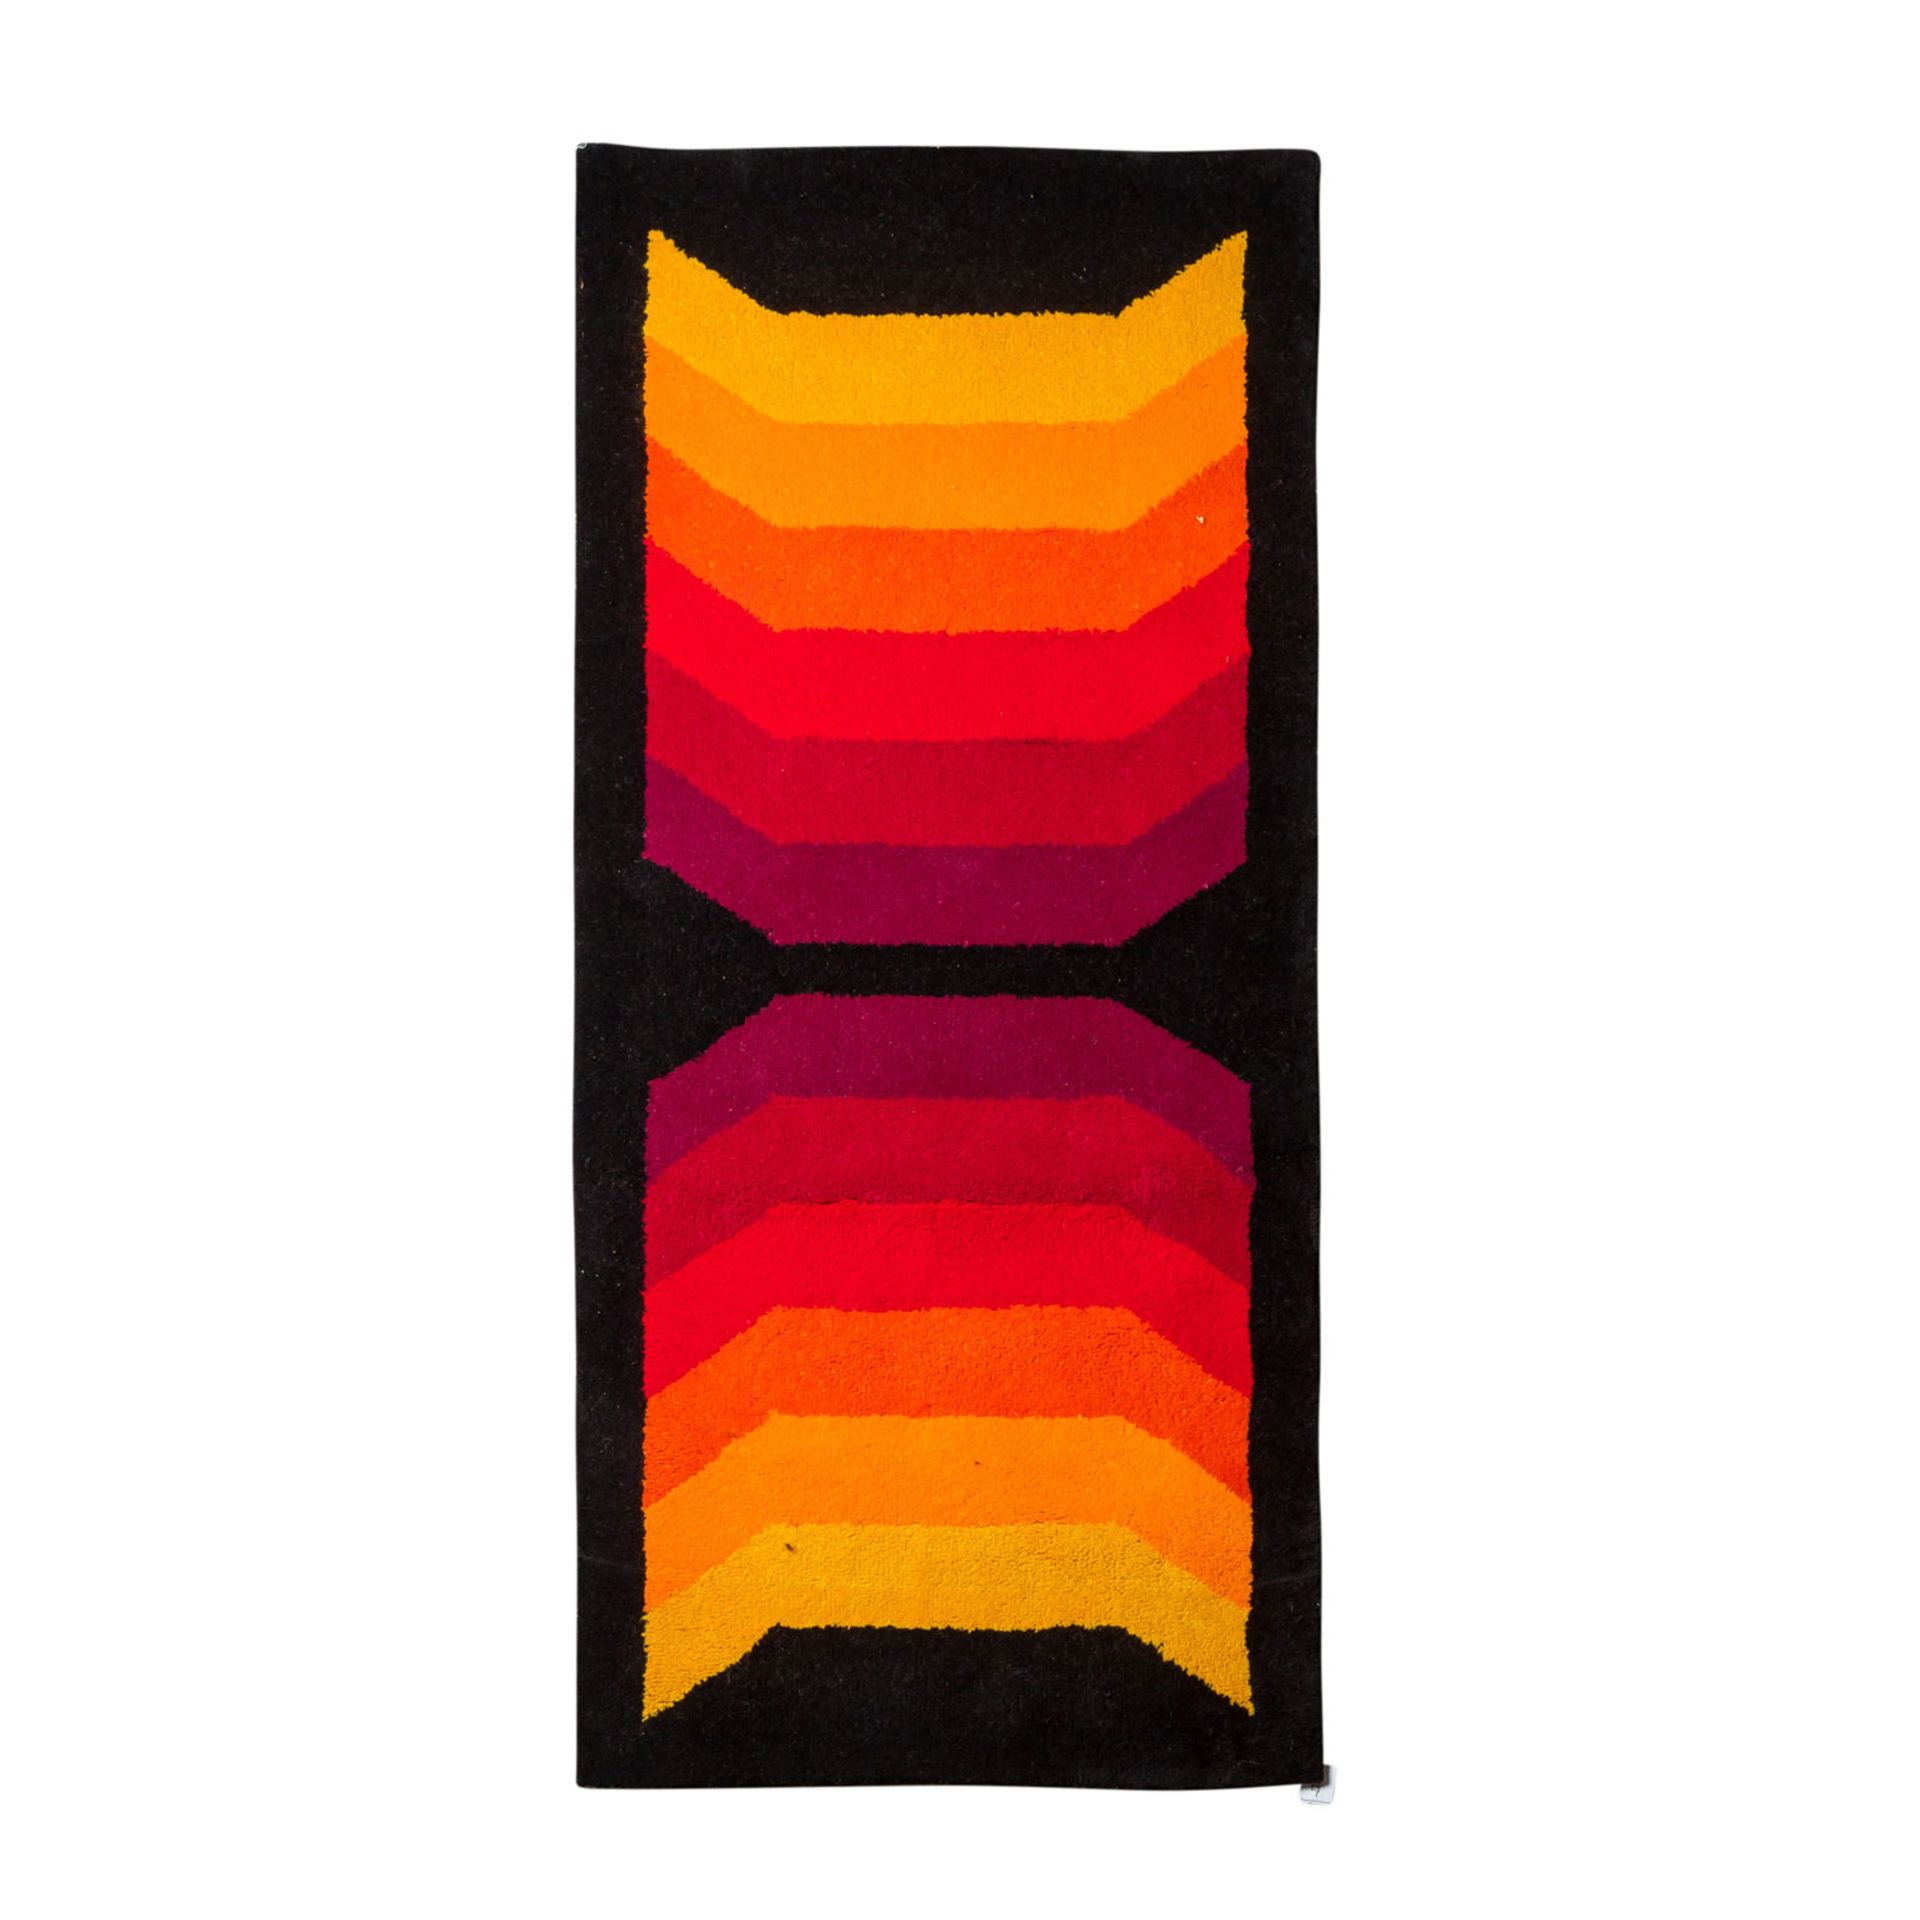 Design Teppich aus Wolle. 1970er Jahre, 196x90 cm.Der schwarze Grund ist gemustert mit zwei